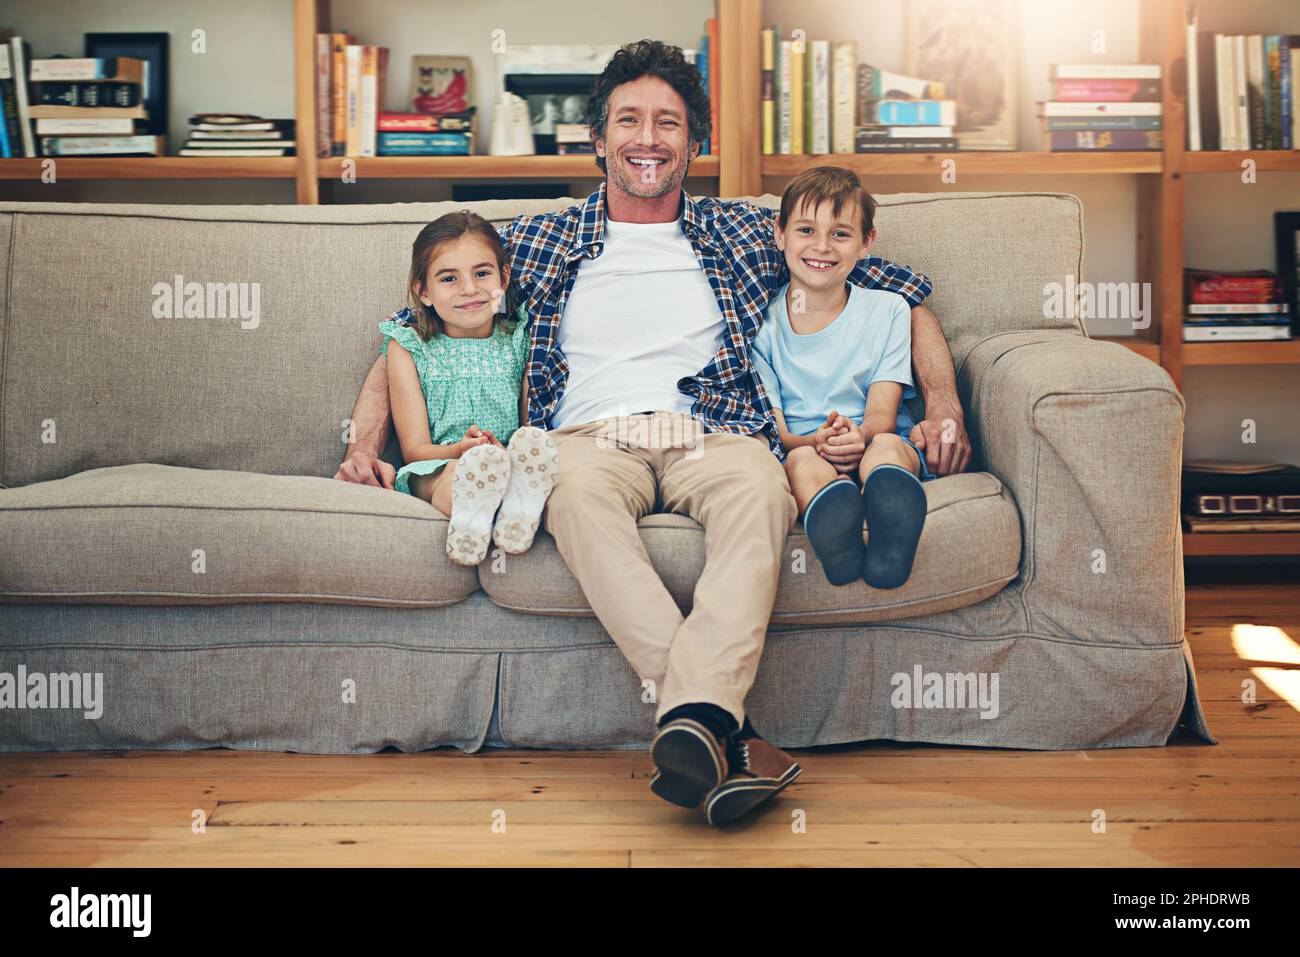 Unsere Lieblingszeit ist Familienzeit. Porträt einer glücklichen Familie, die sich zu Hause auf dem Sofa entspannen kann. Stockfoto